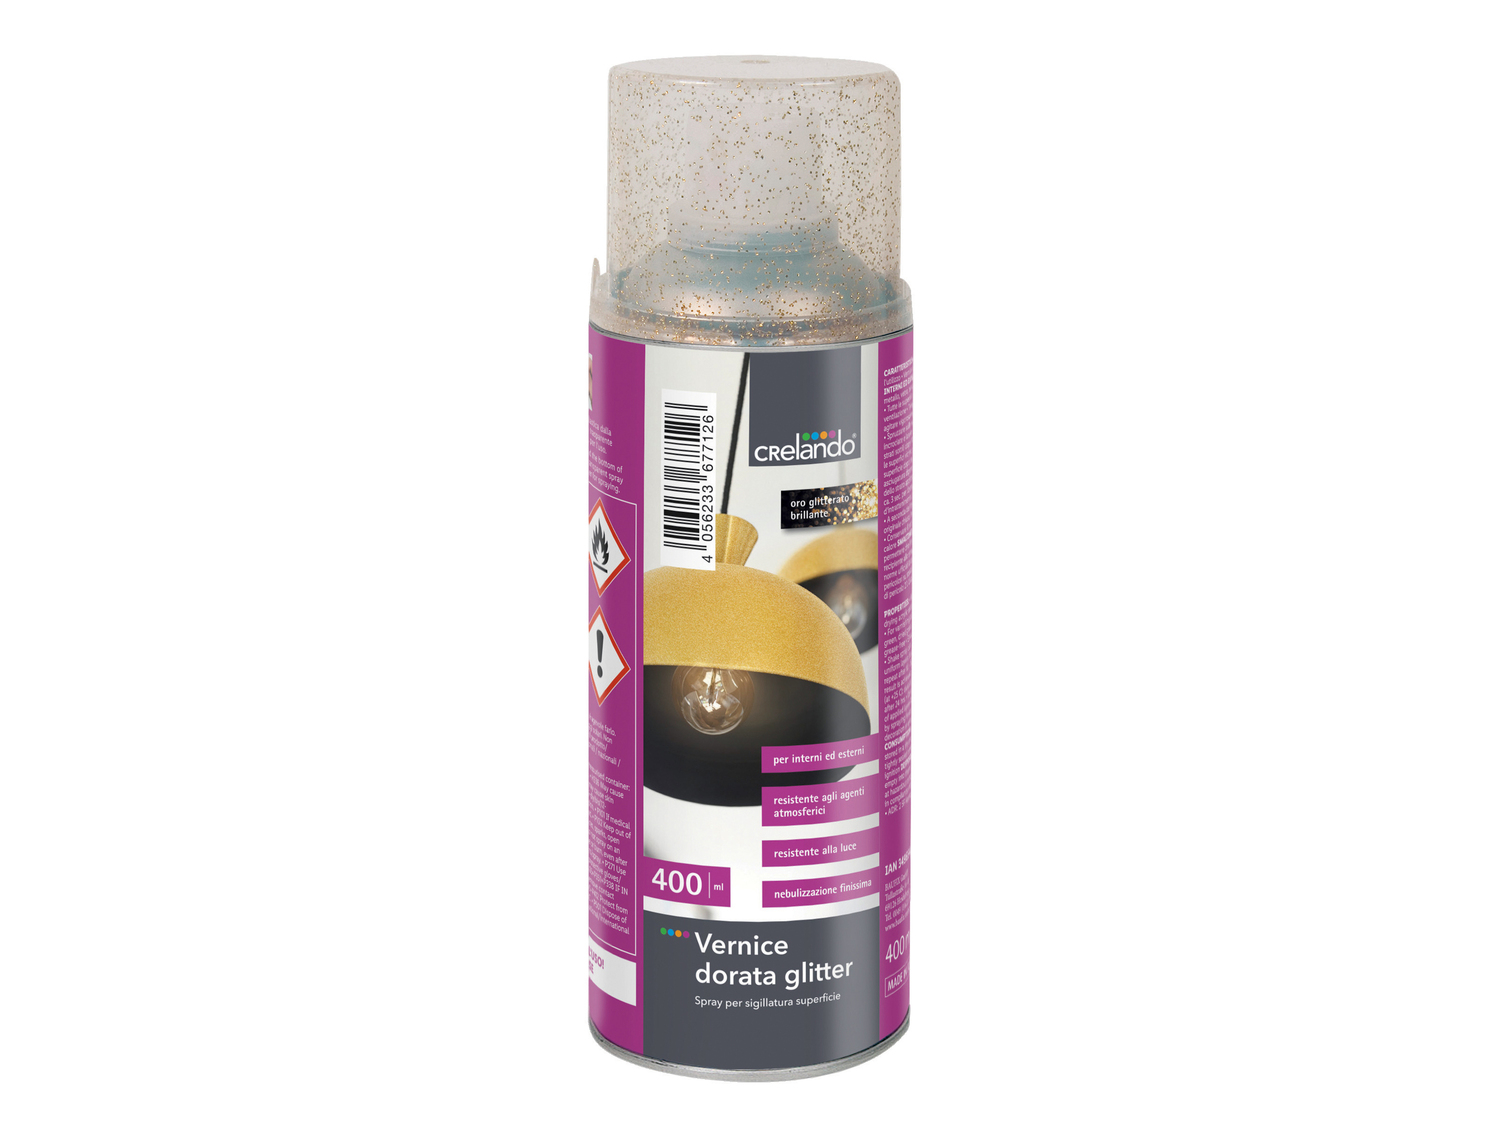 Vernice spray per decorazioni Crelando, prezzo 3.99 &#8364;  
400 ml
Caratteristiche